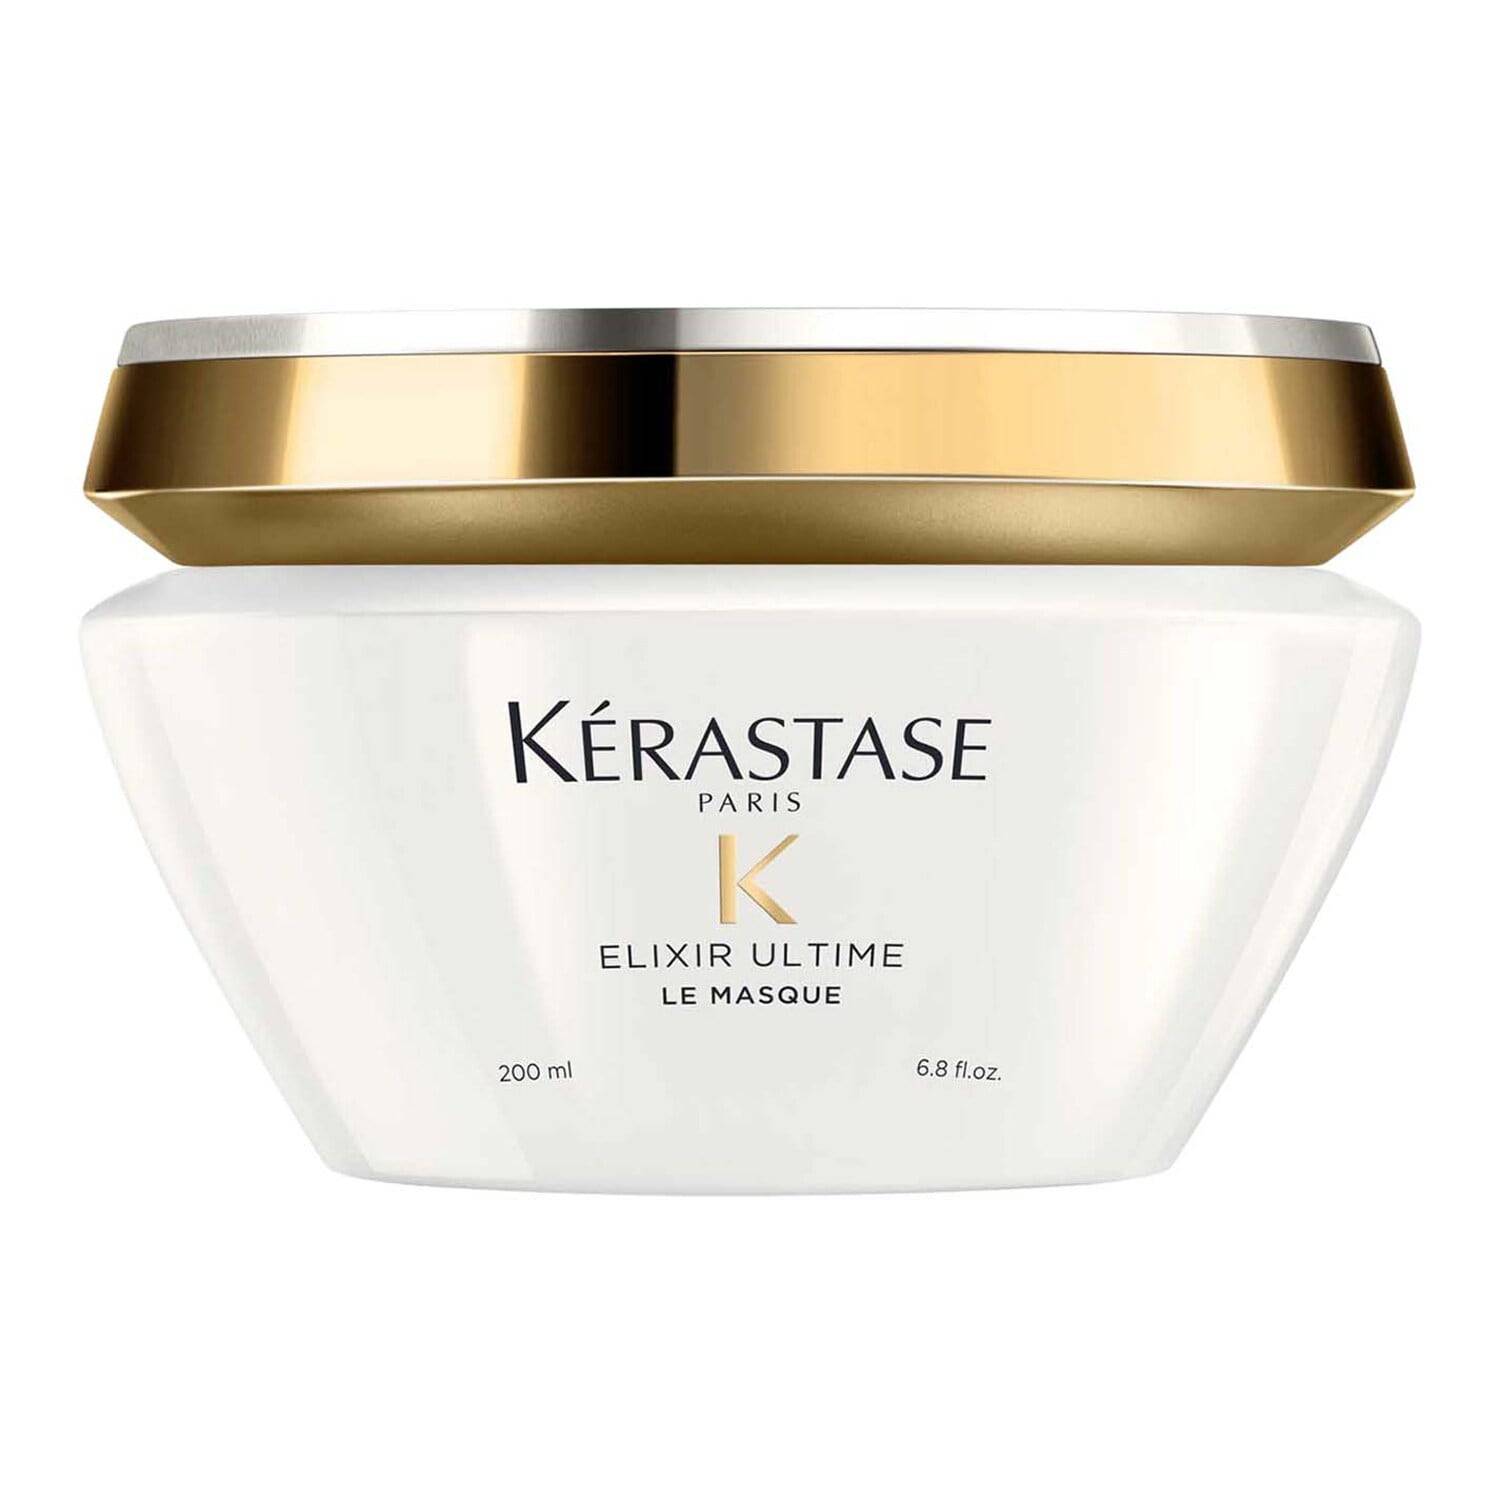 Elixir Ultime - Masque aux 4 huiles pour des cheveux intensément nourris - Kérastase